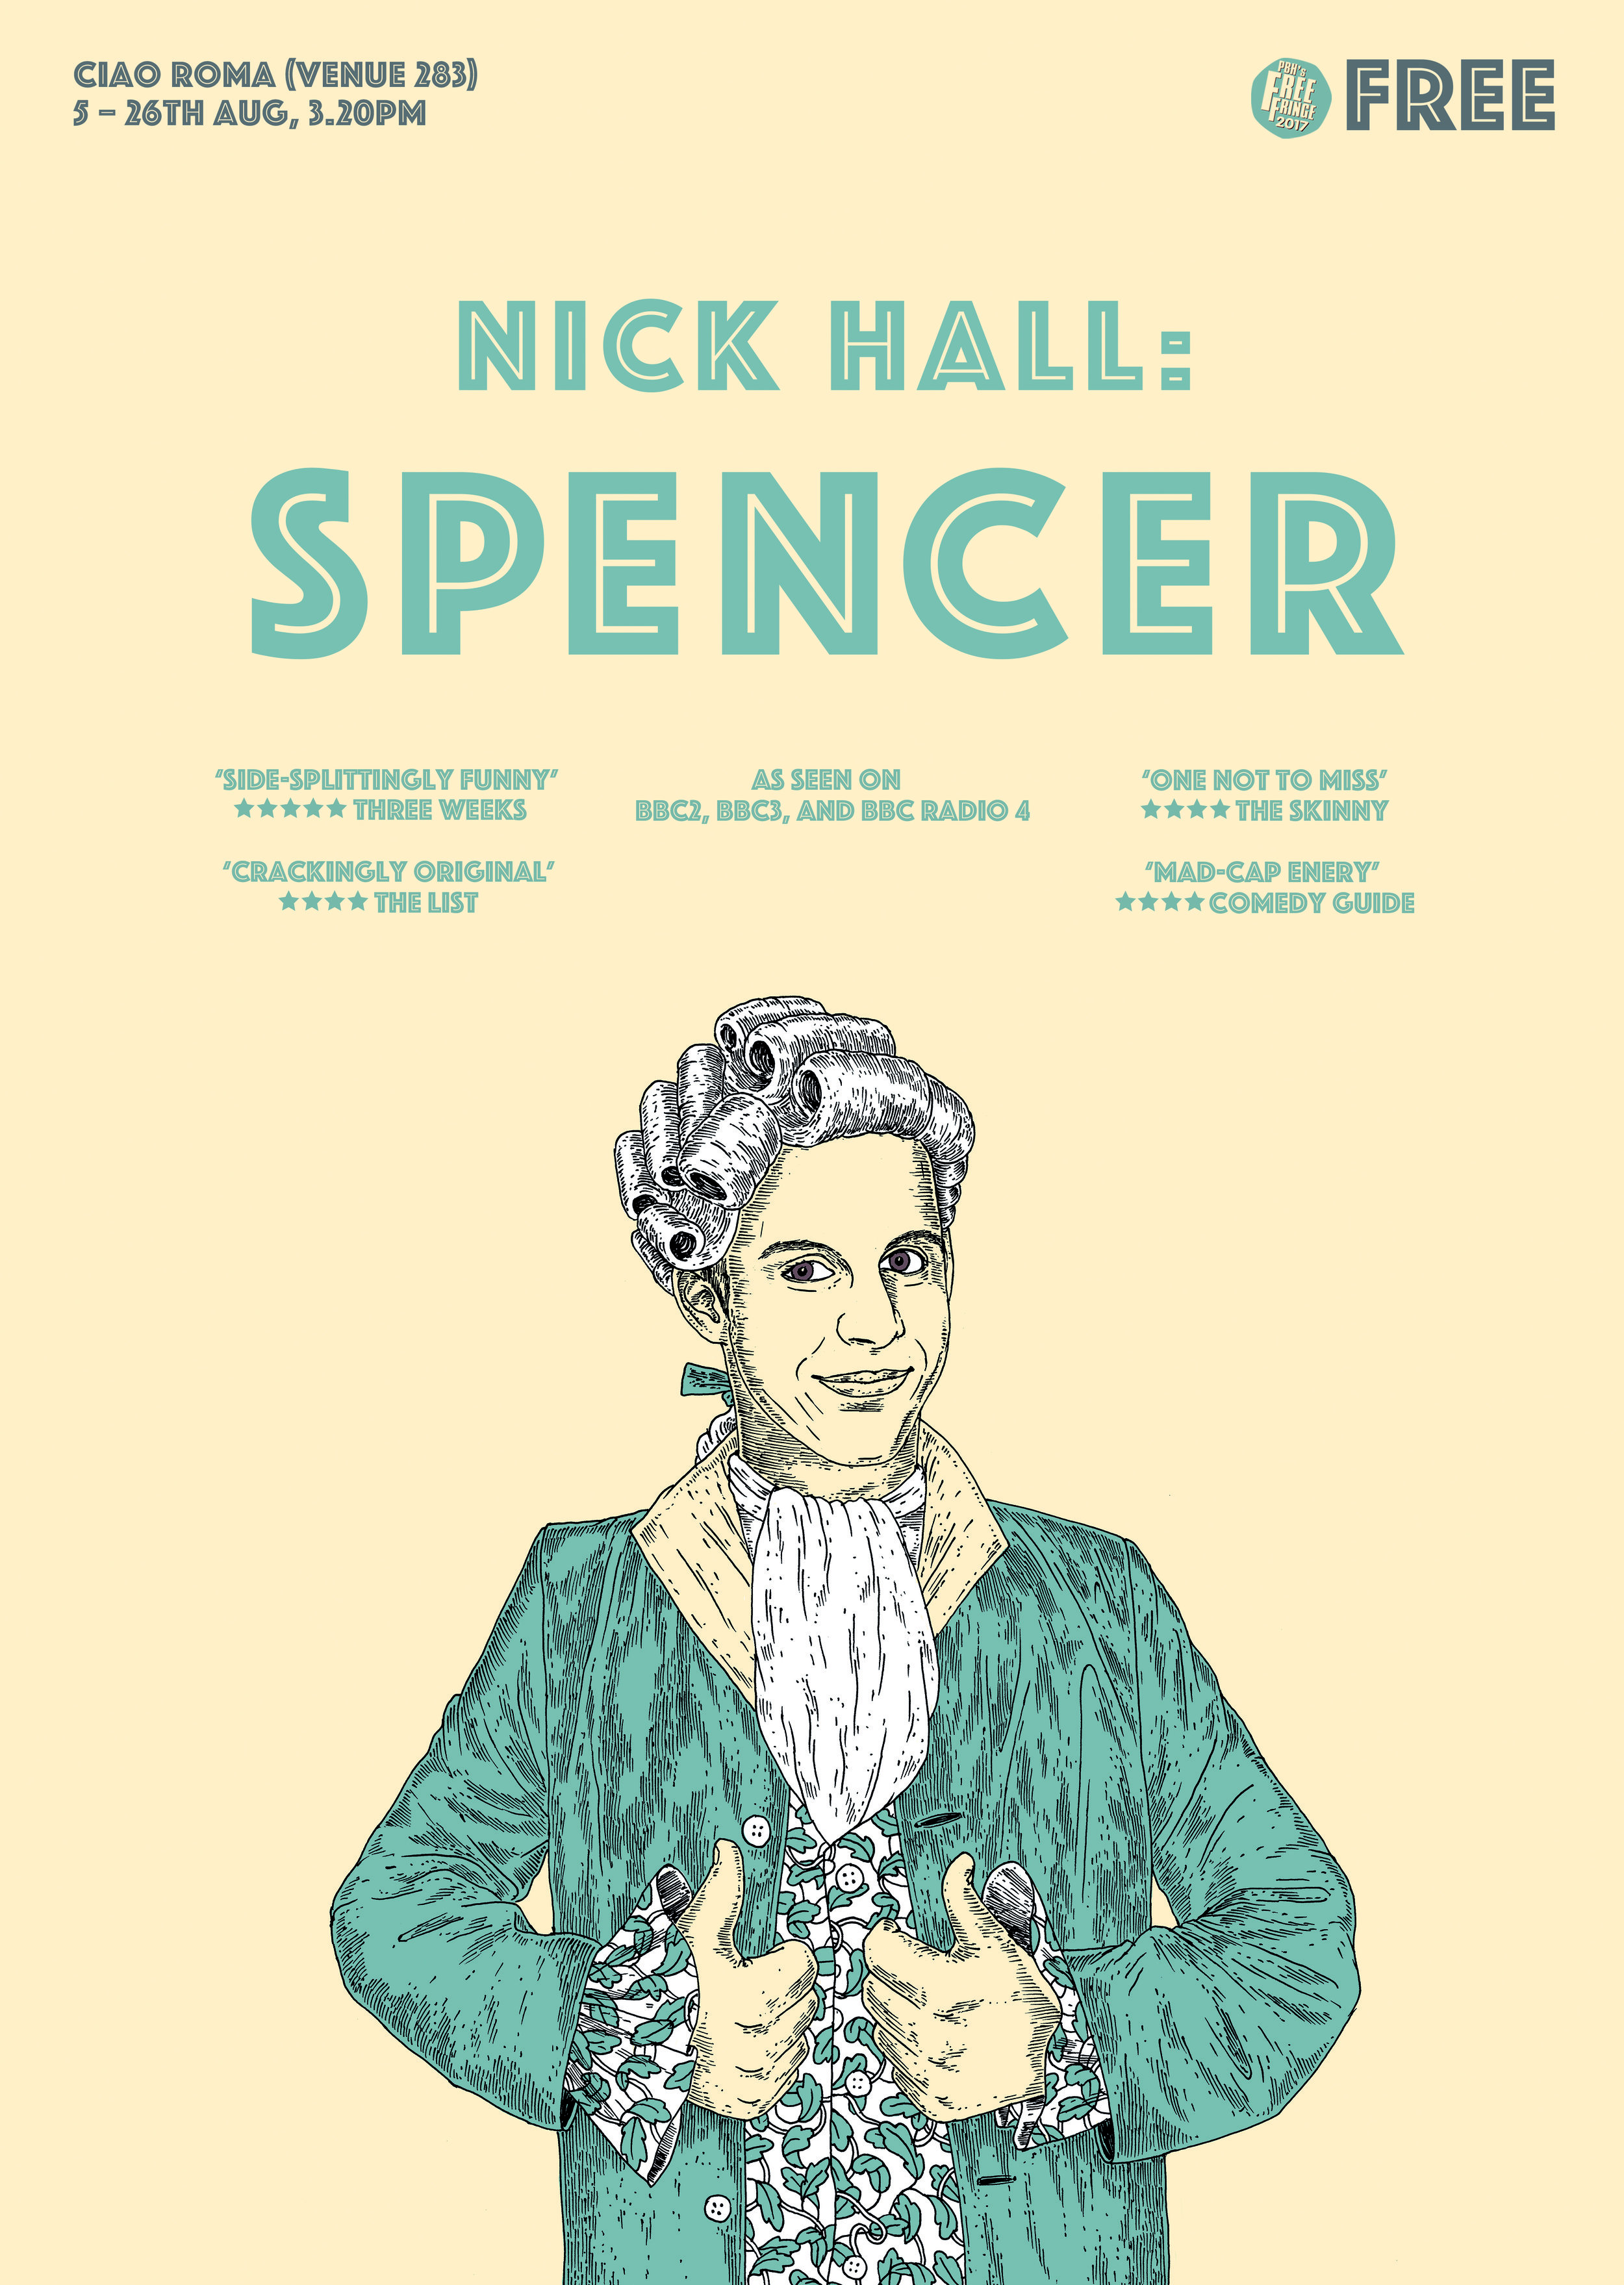 Spencer Poster (2).jpg